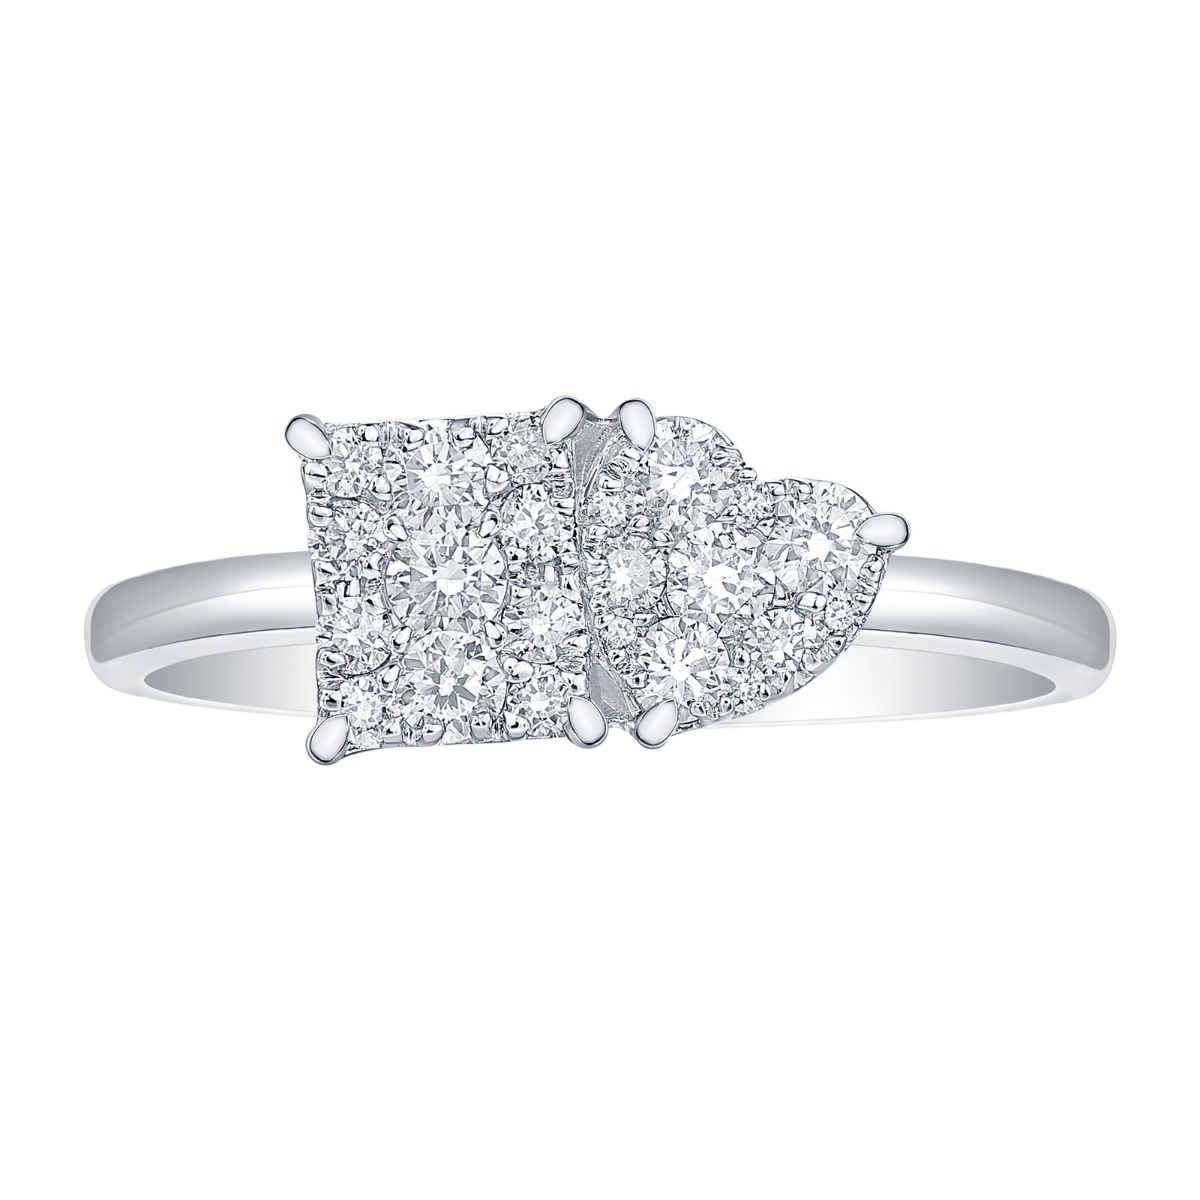 R37087WHT – 18K White Gold Diamond Ring, 0.39 TCW